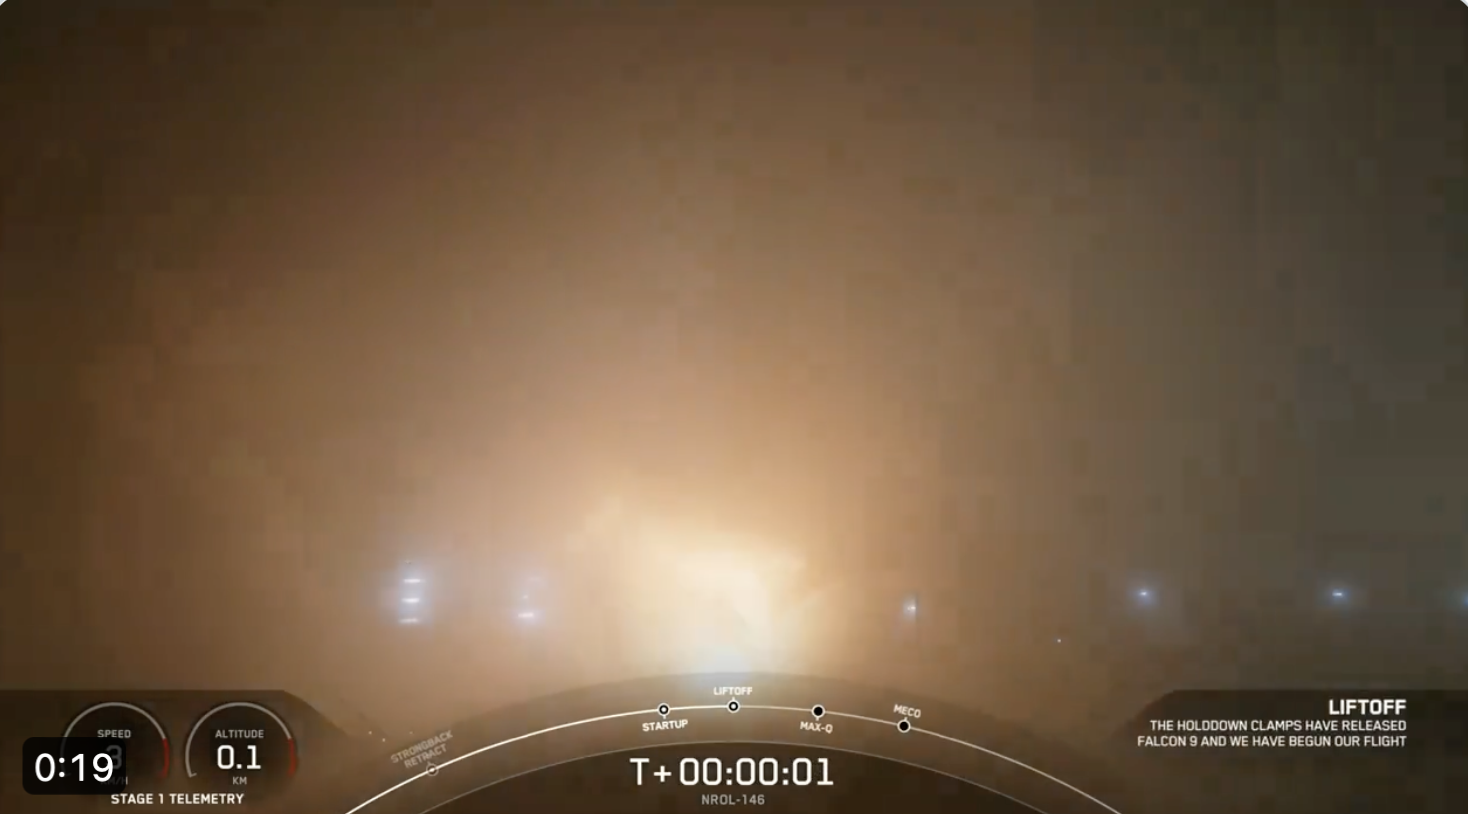 أطلقت شركة SpaceX الدفعة الأولى من أقمار التجسس الصناعية من الجيل التالي لـ NRO